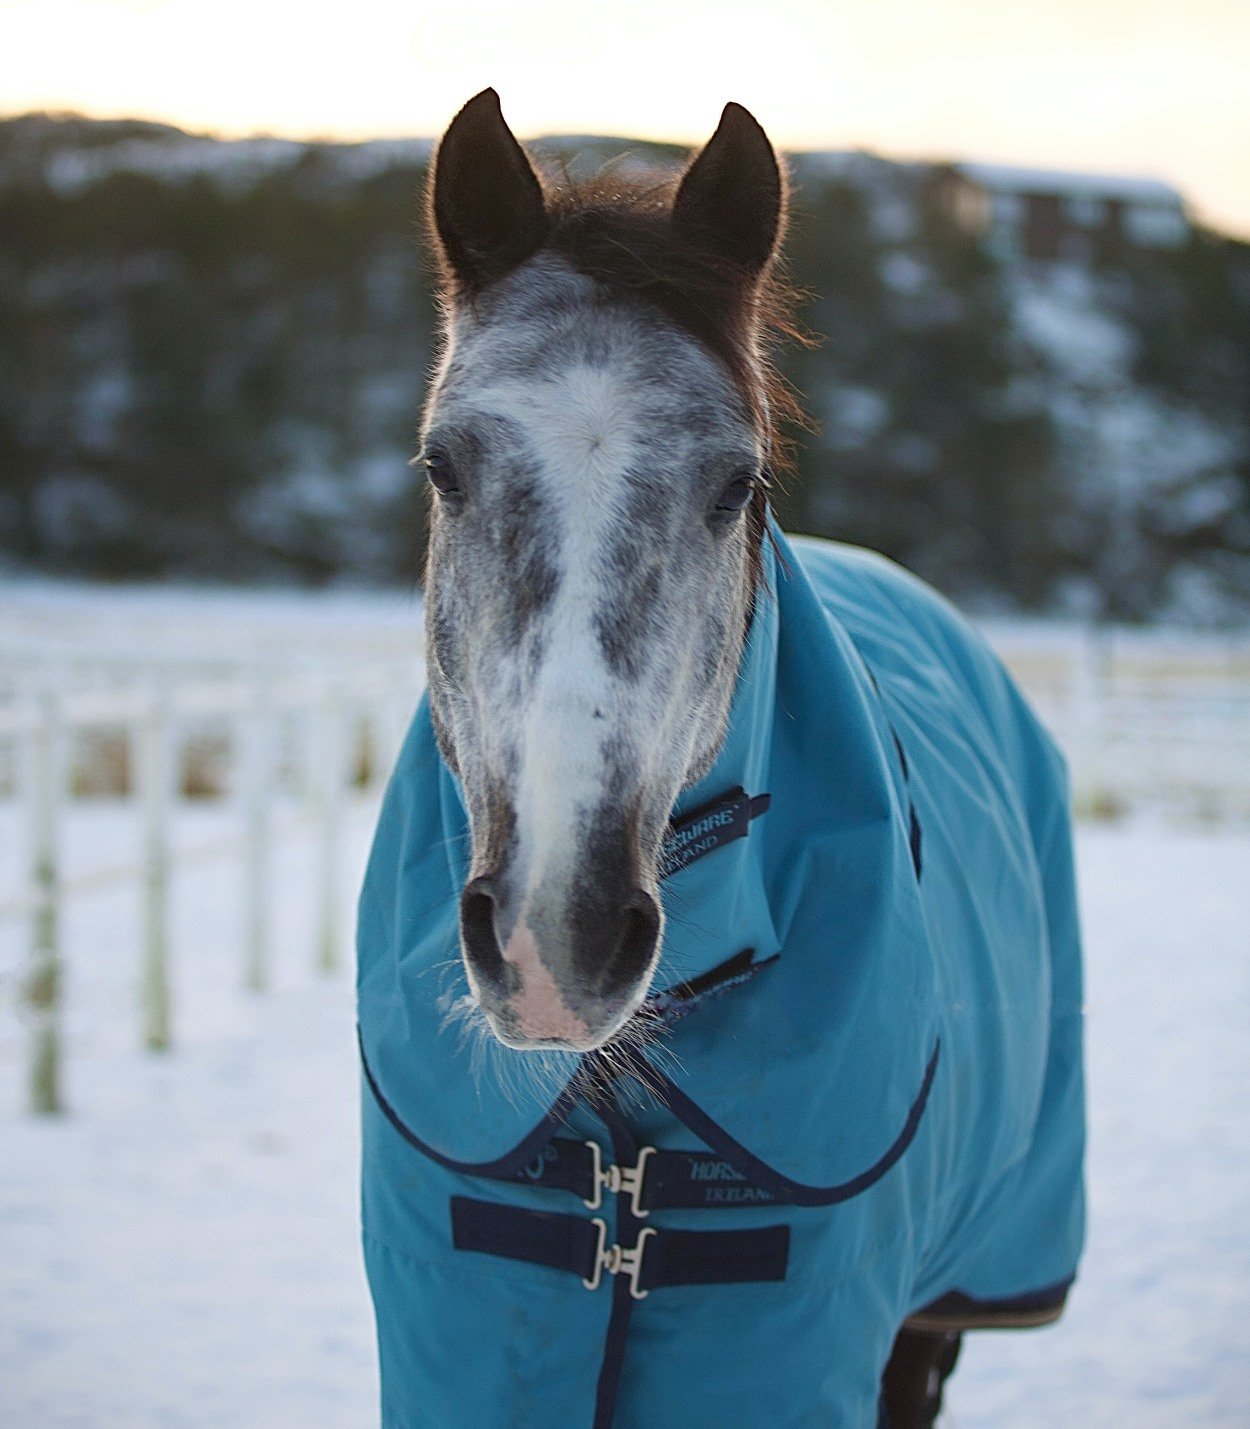 Horse in a blanket in winter